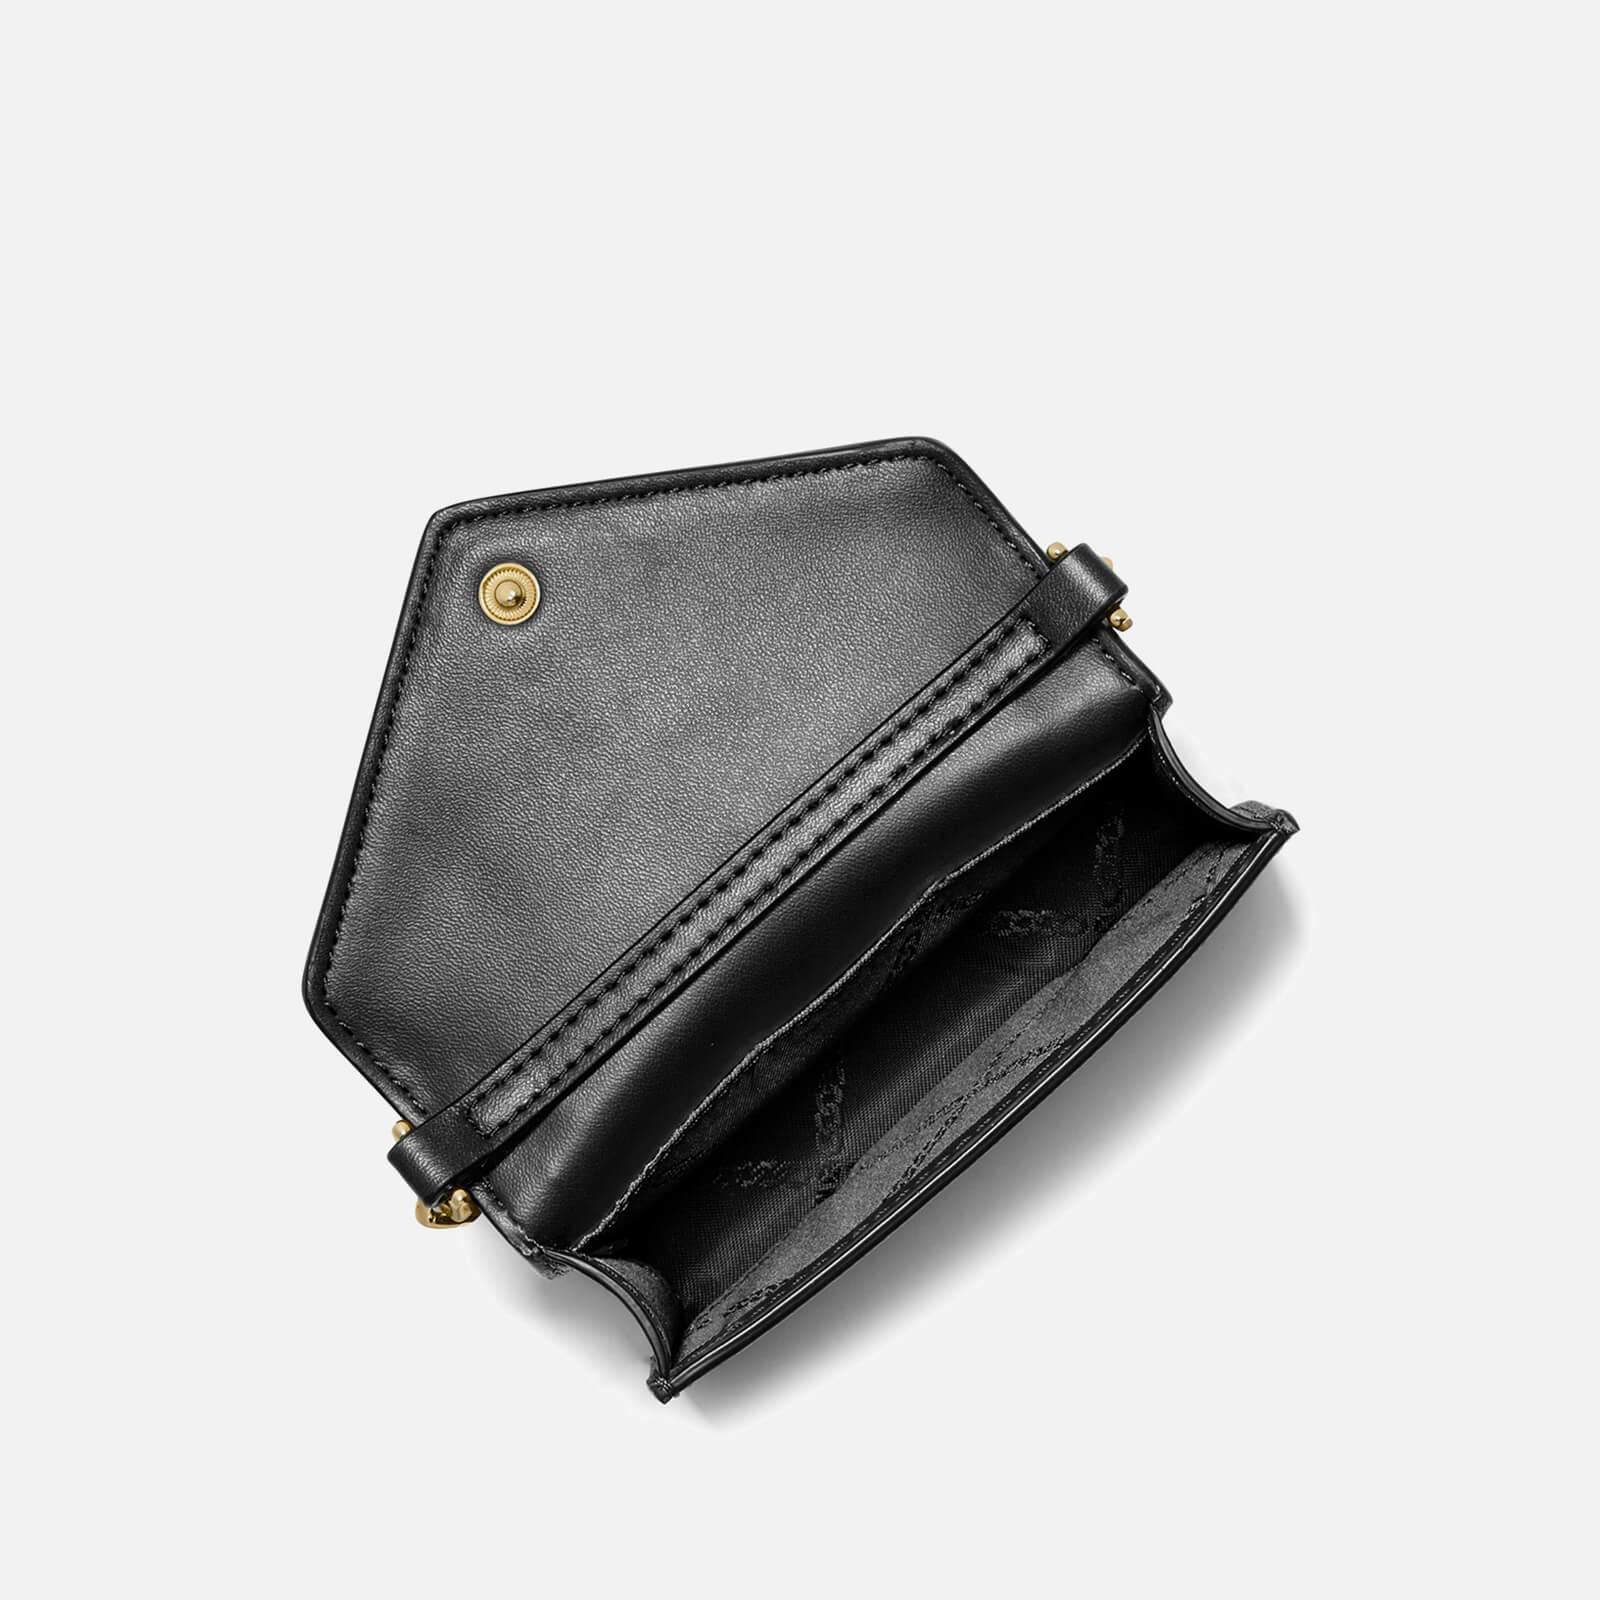 women's “Michael Kors” Jet Set Mid Saffiano leather envelope clutch, Black.